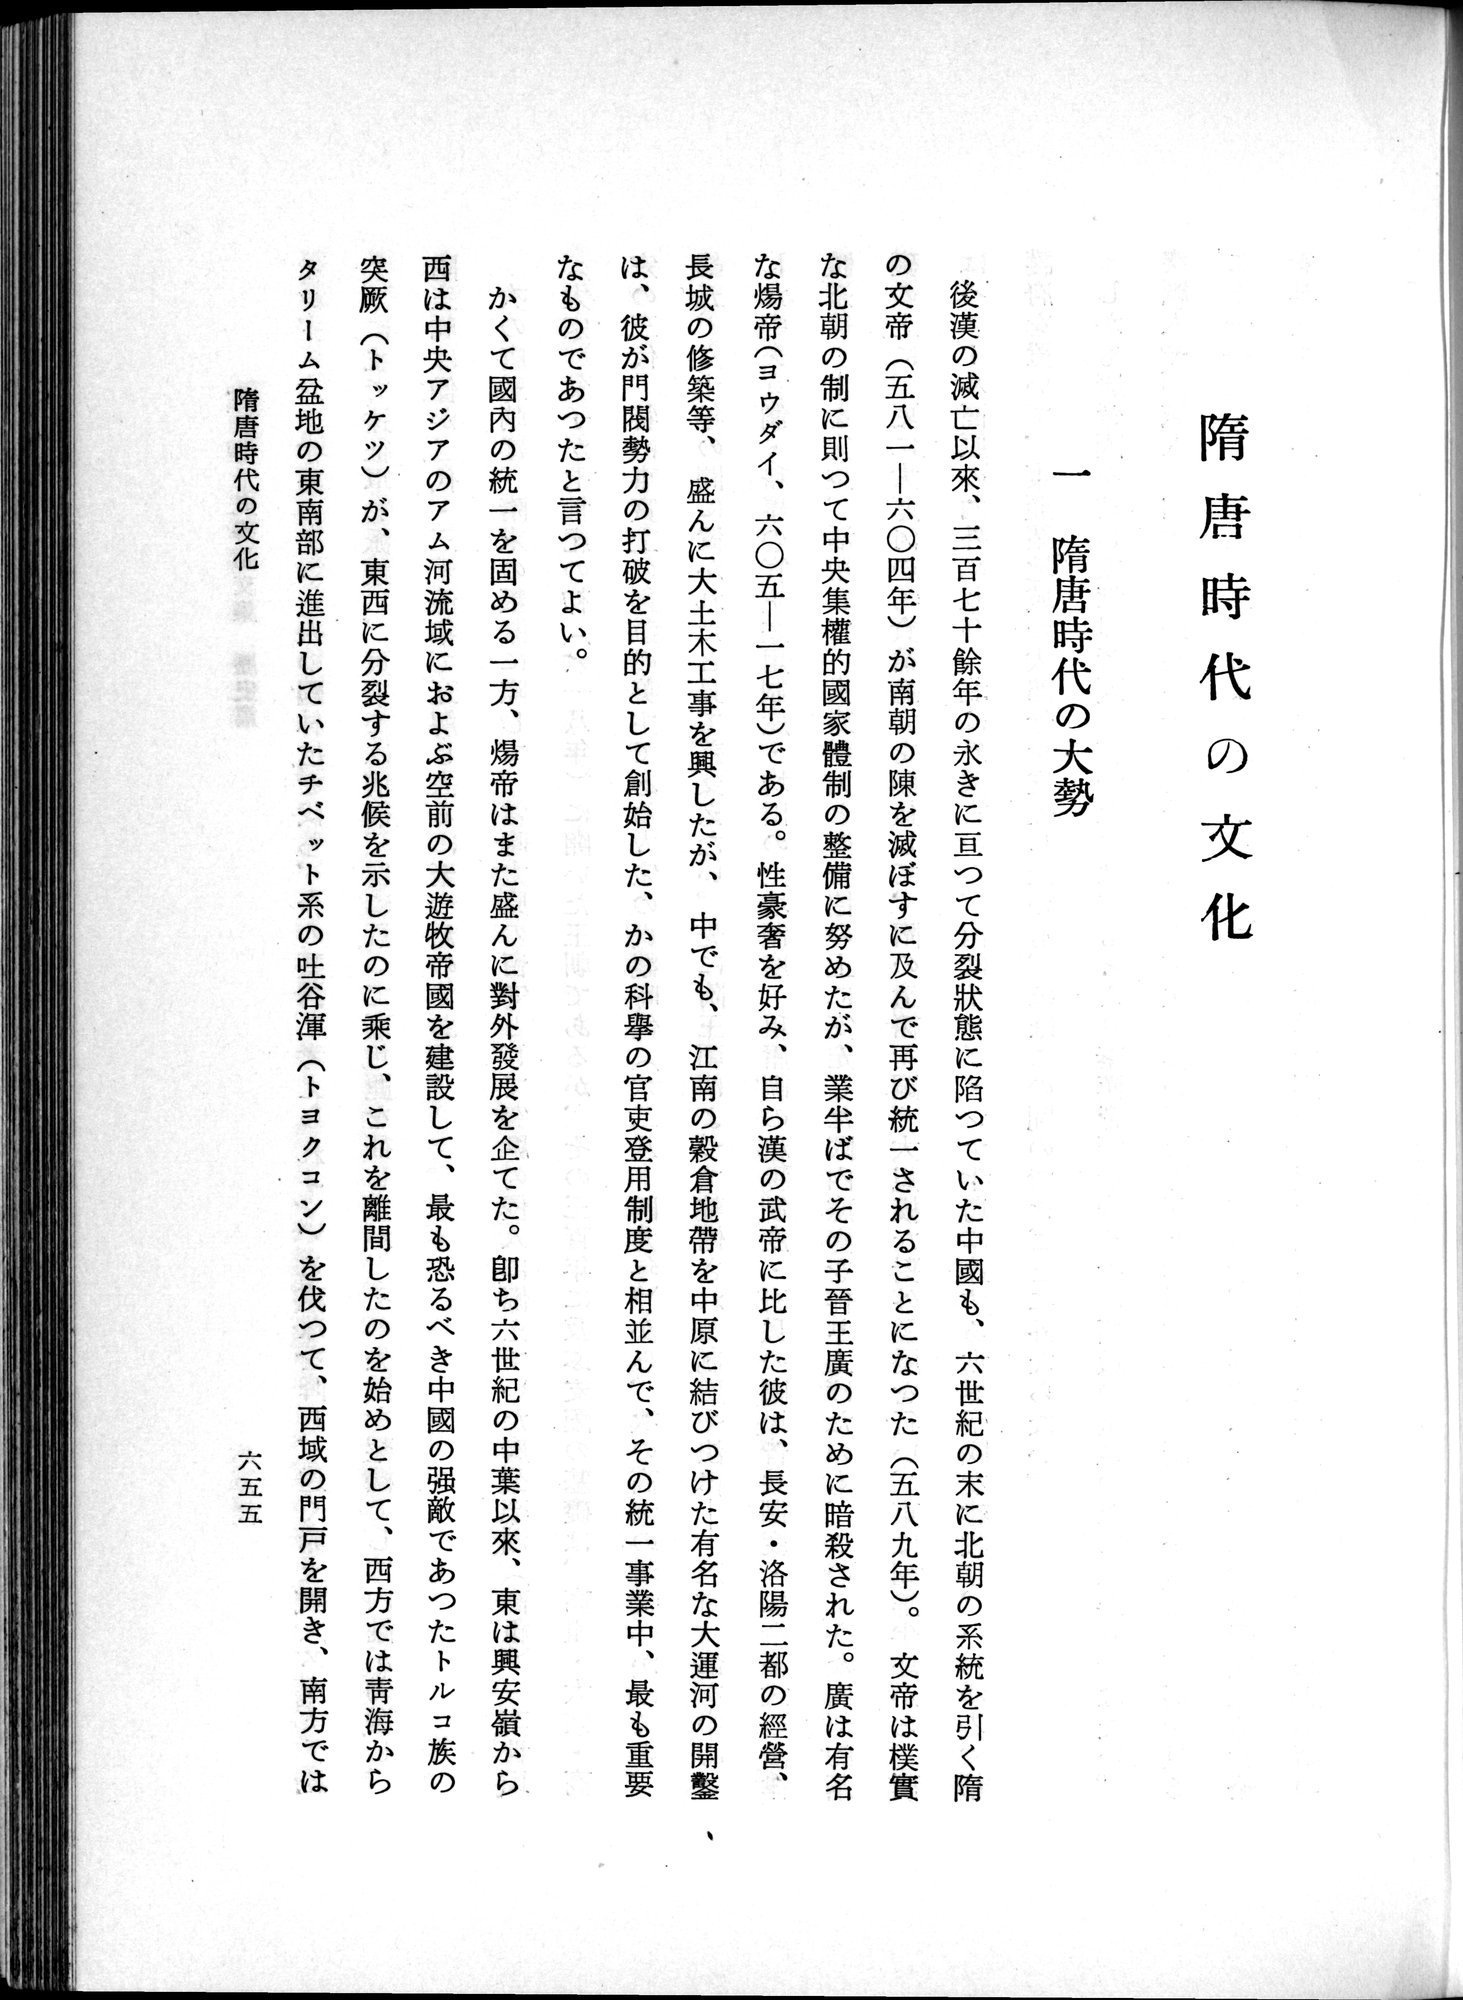 羽田博士史学論文集 : vol.1 / Page 693 (Grayscale High Resolution Image)